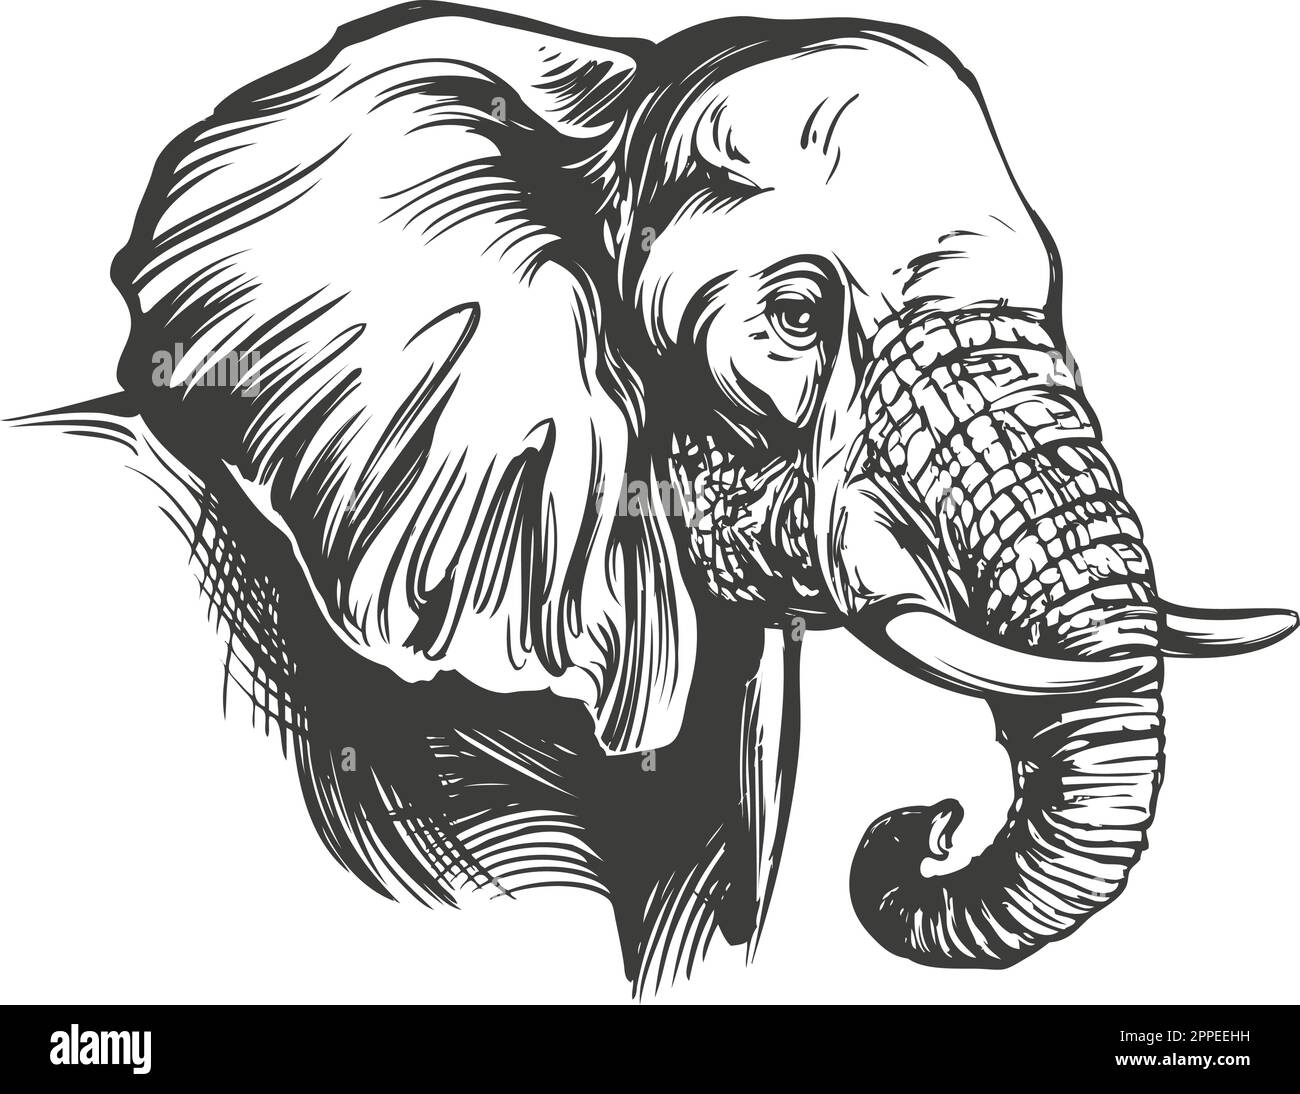 Elefant Big Animal von Hand gezeichnete Vektorzeichnung realistische Skizze. Stock Vektor